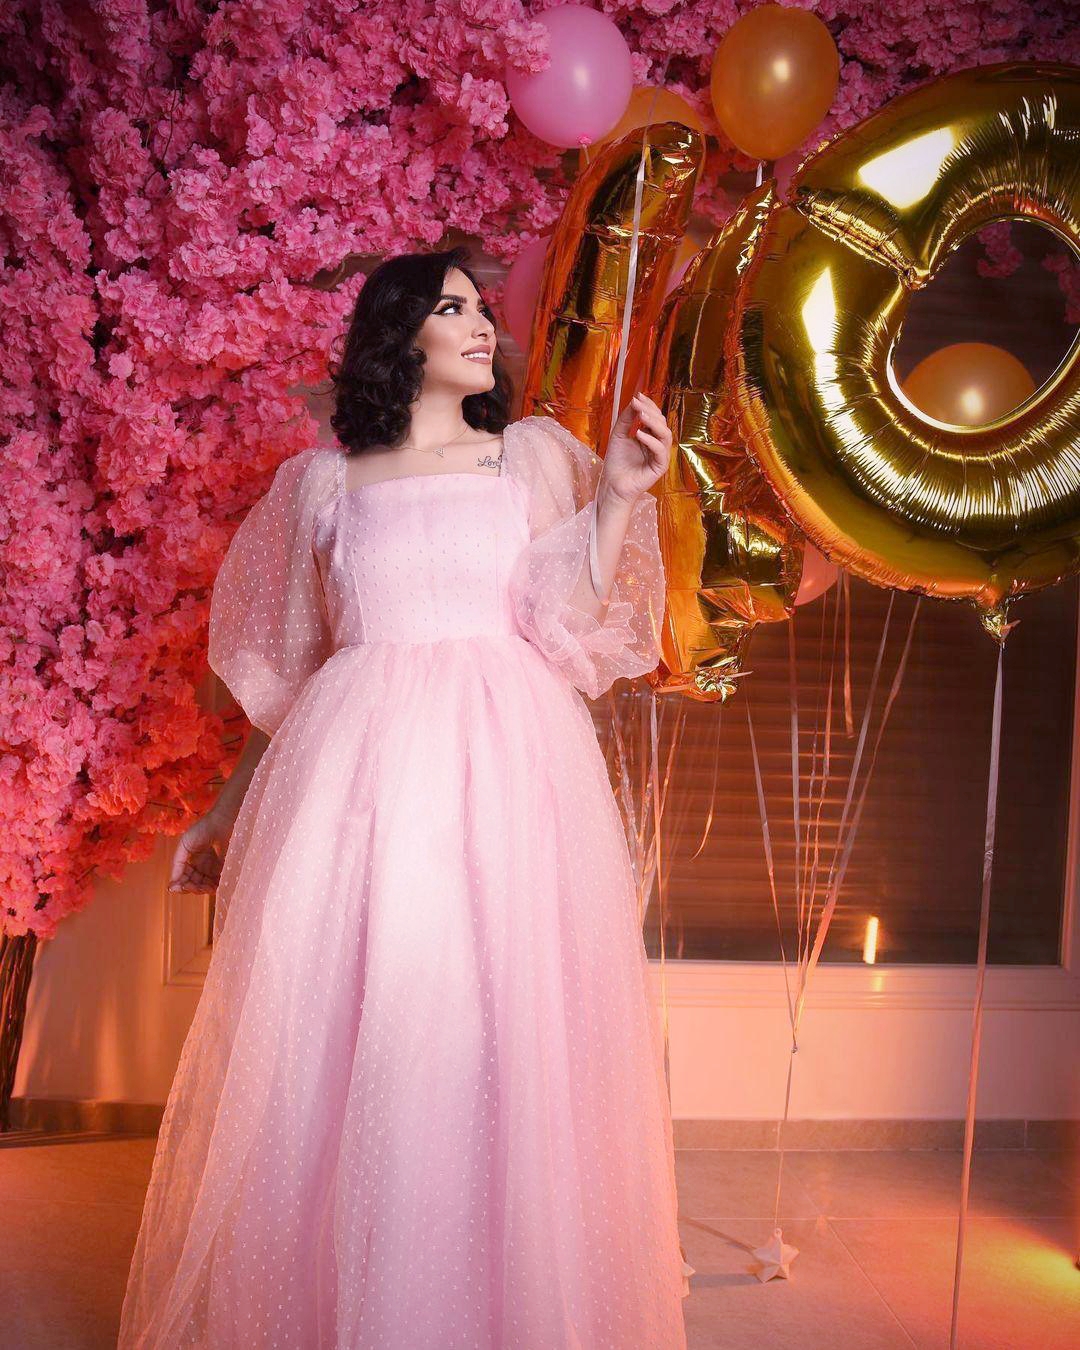 هبة الدري تحتفل بعيد ميلادها مرتدية ثوباً وردياً وخلفها رقم 40 والكثير من الورود 